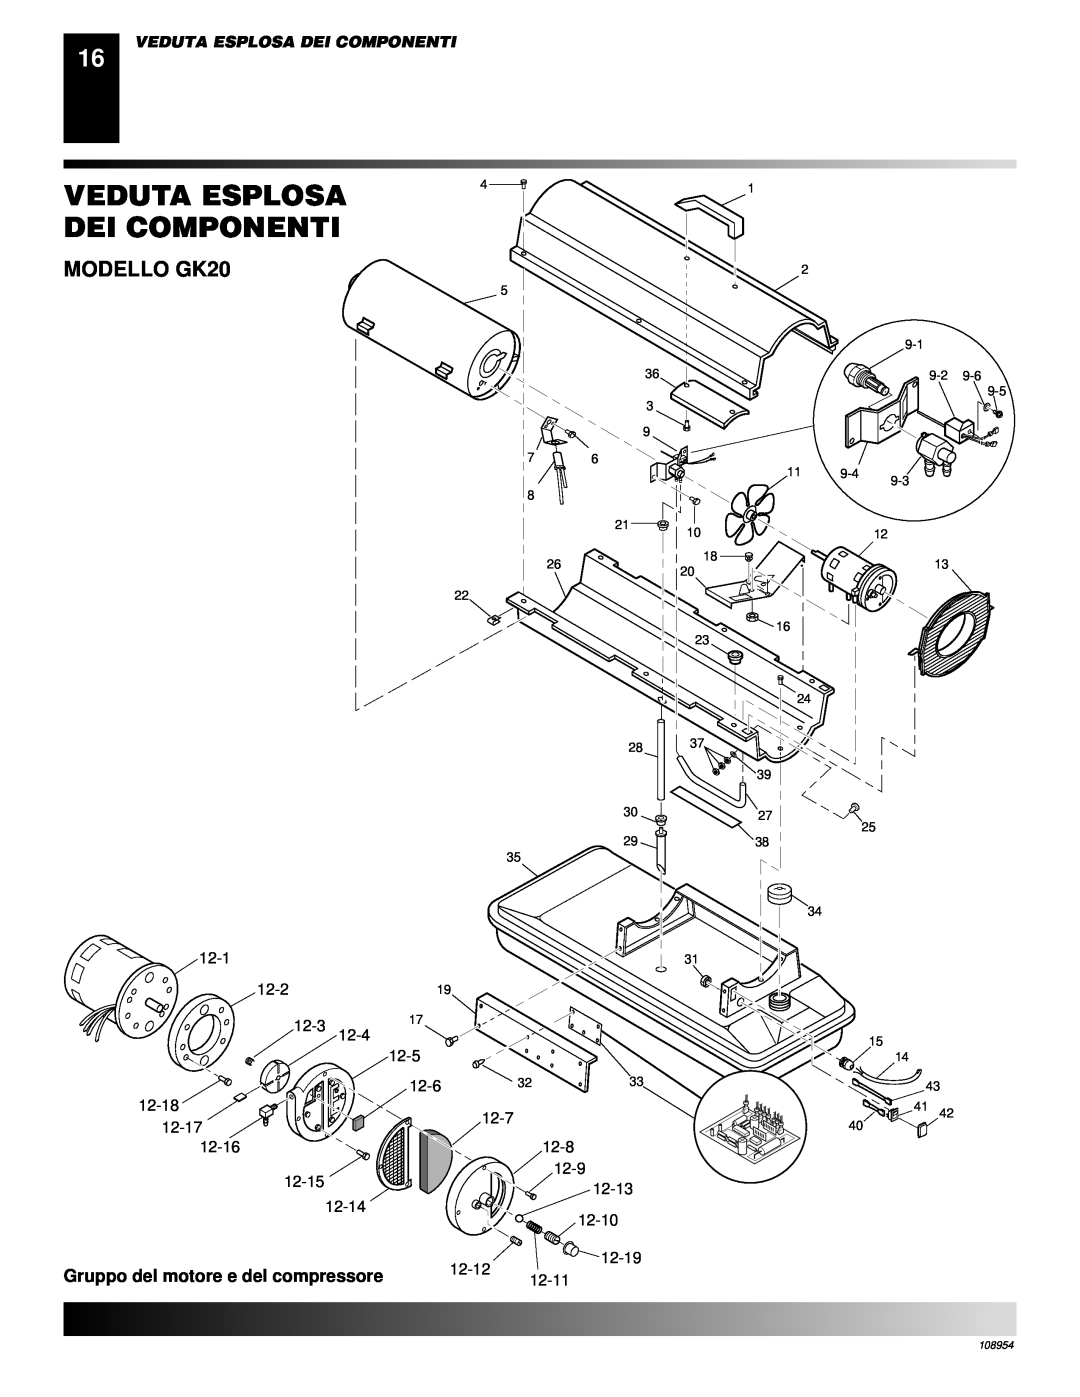 Desa GK30 owner manual Veduta Esplosa Dei Componenti, MODELLO GK20 